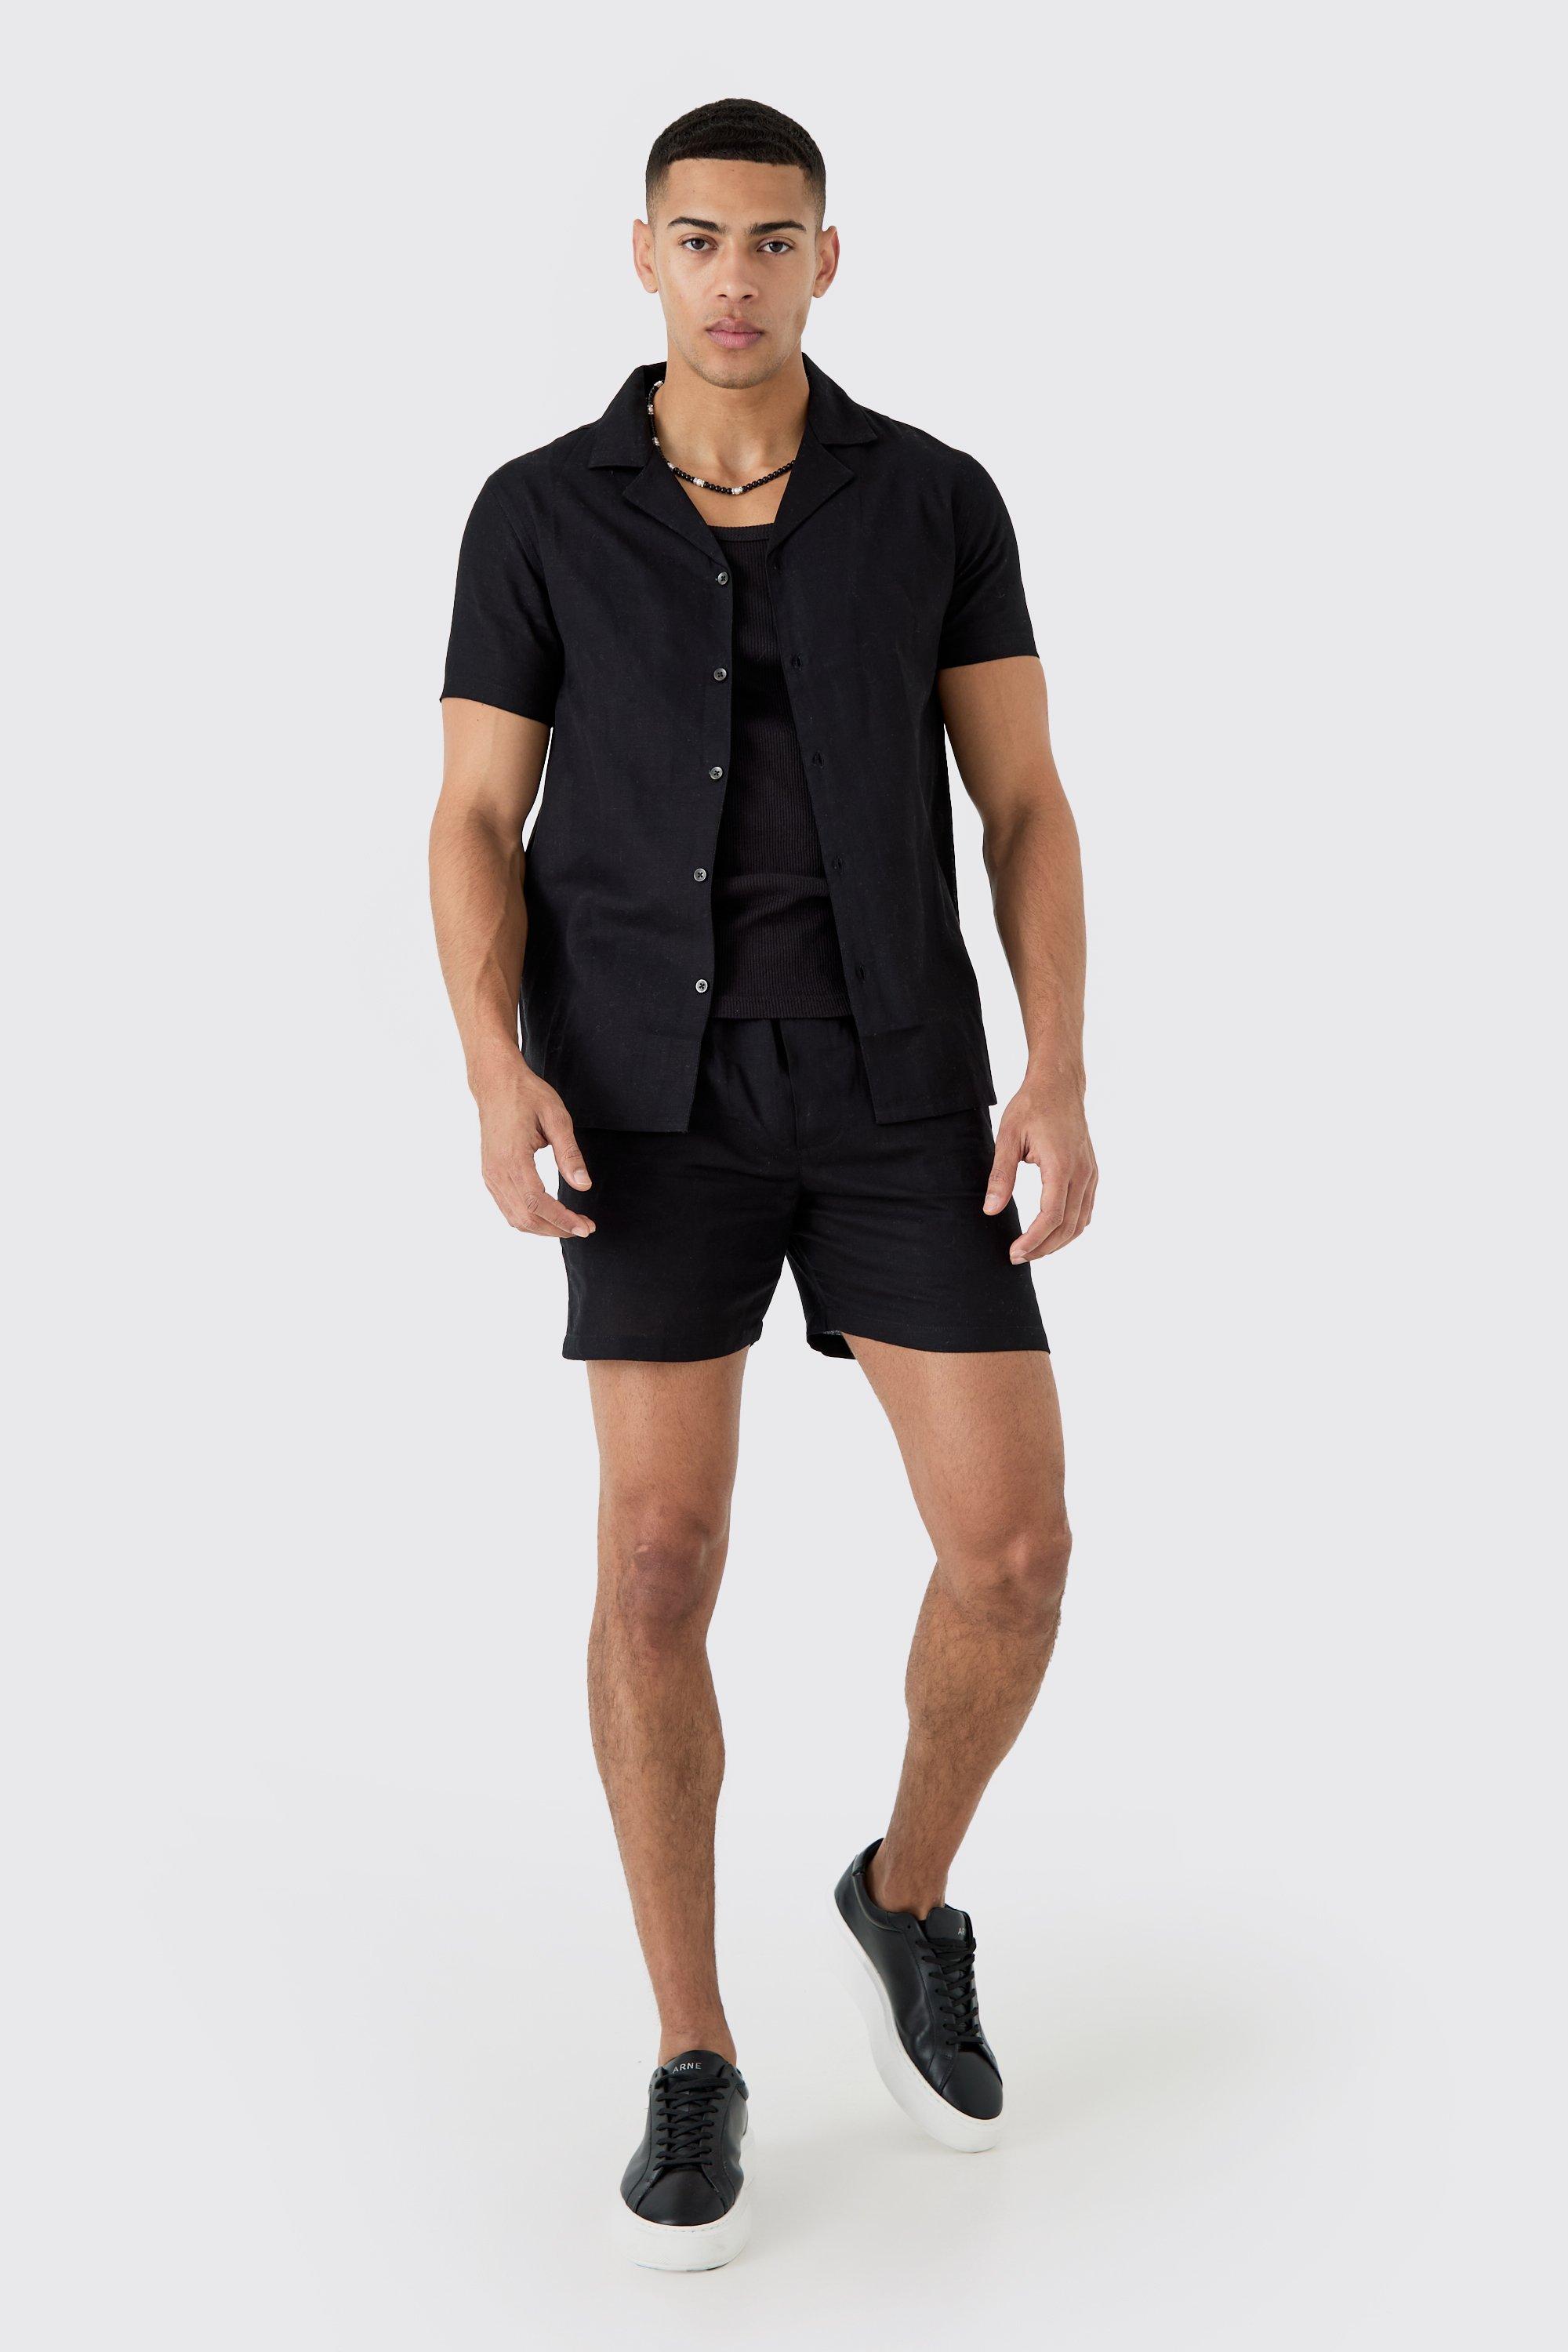 Mens Black Short Sleeve Linen Shirt & Short, Black